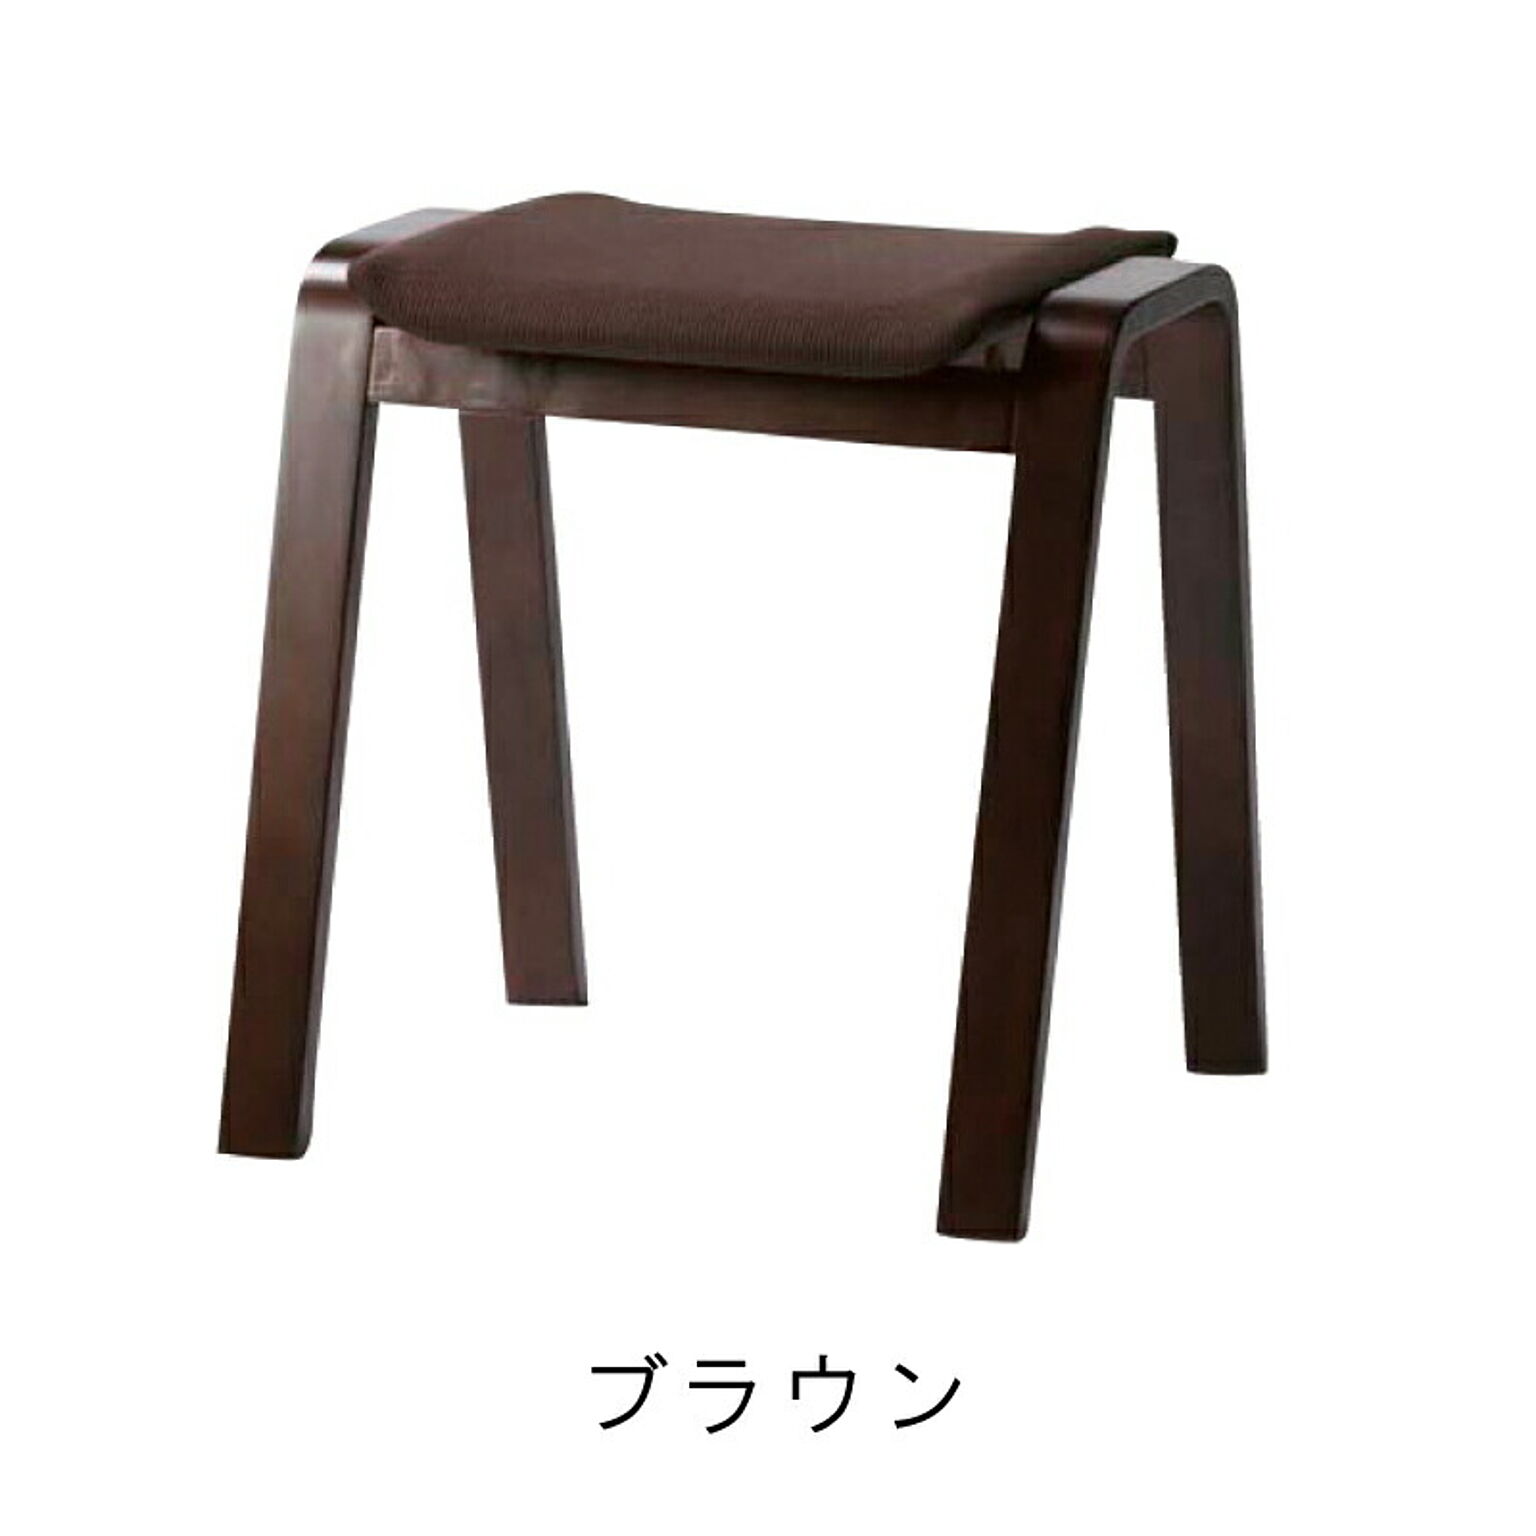 スツール・丸椅子